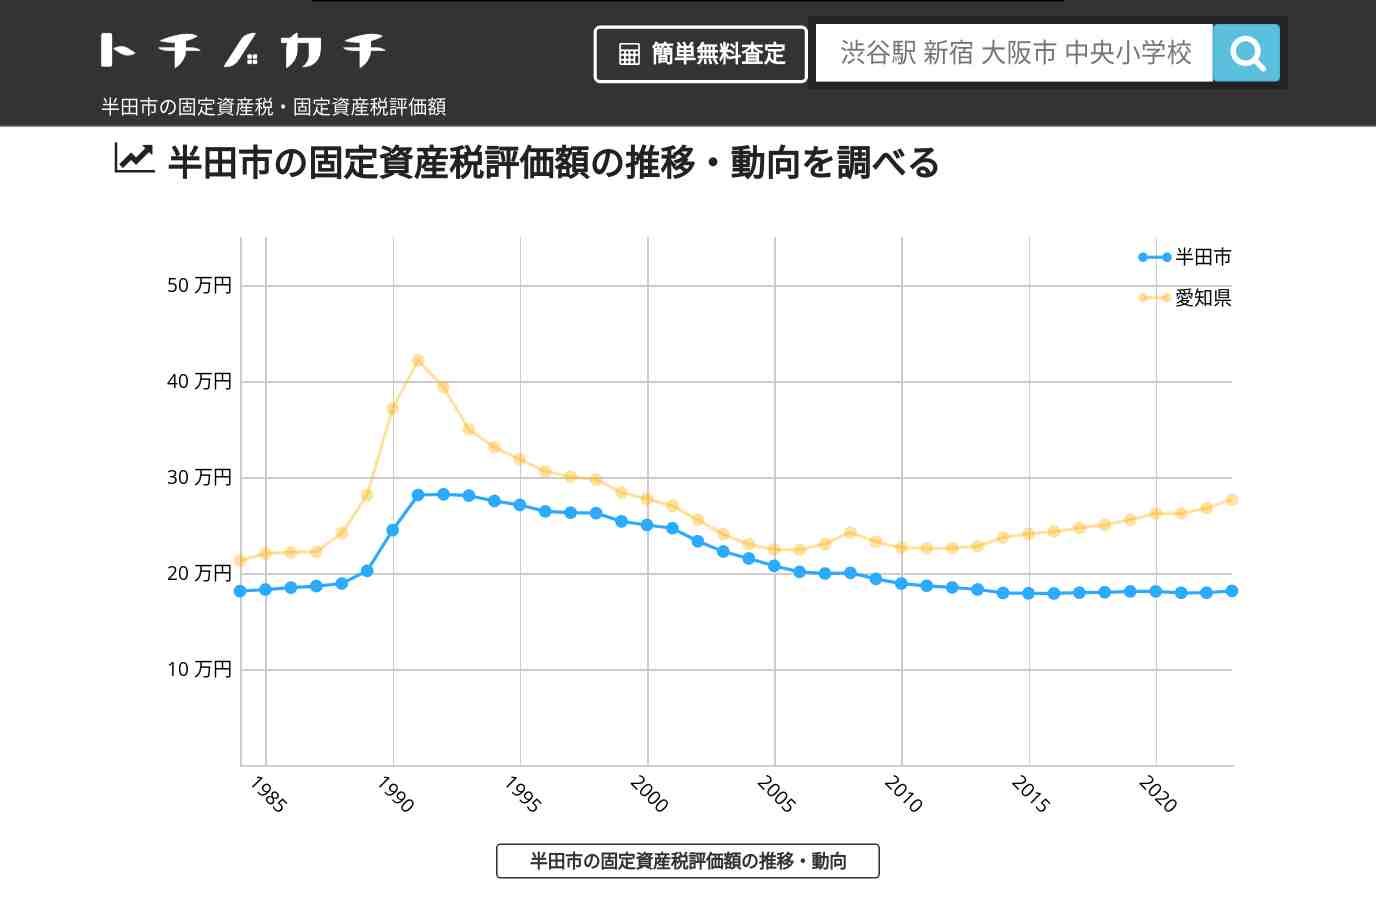 成岩小学校(愛知県 半田市)周辺の固定資産税・固定資産税評価額 | トチノカチ